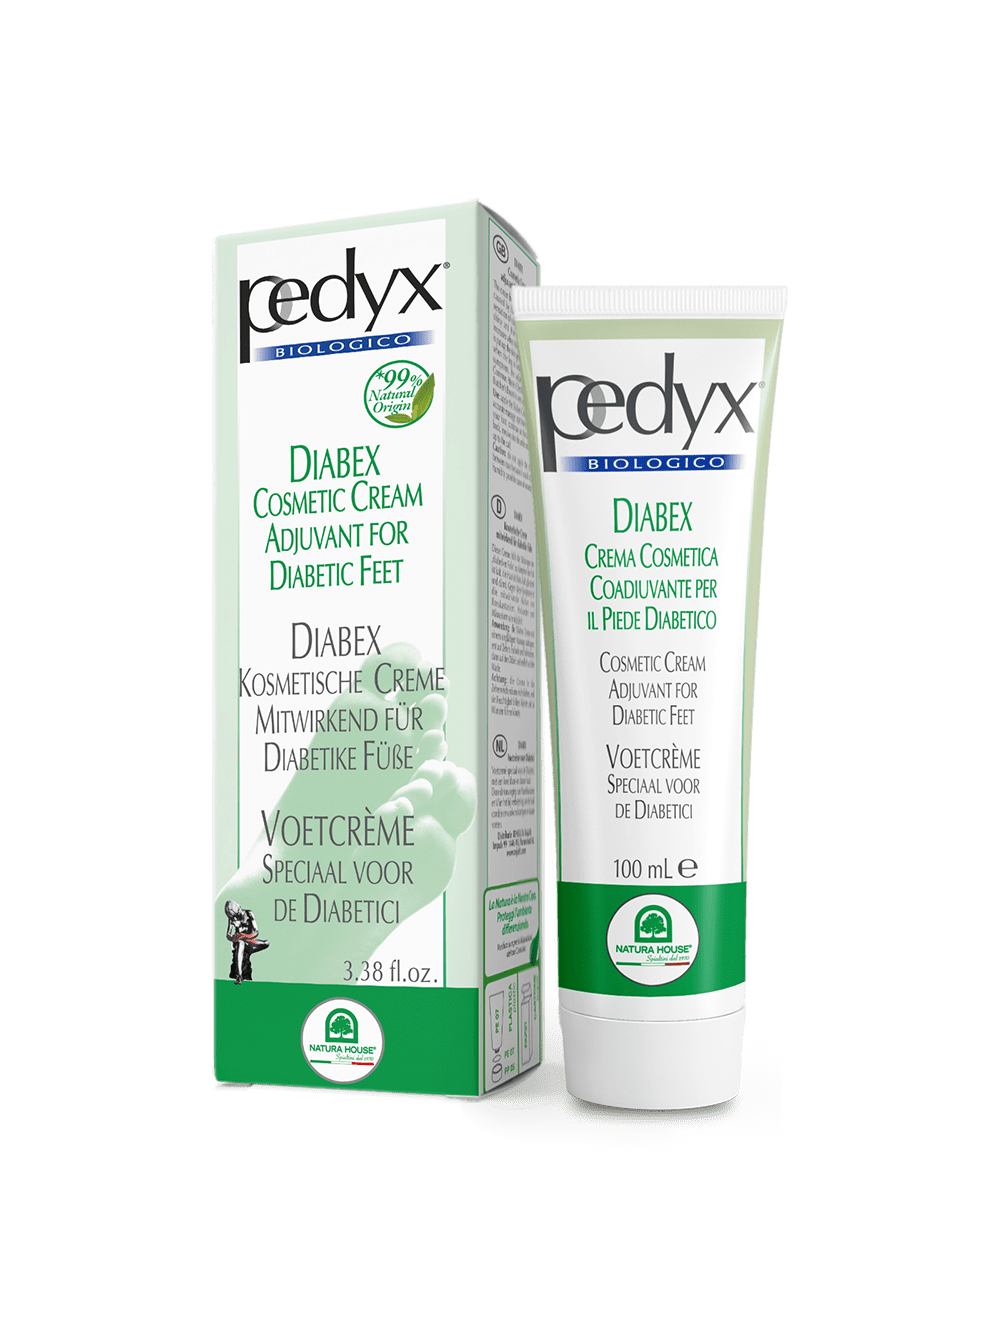 PEDYX DIABEX Coadiuvante Cosmetico per il Piede Diabetico